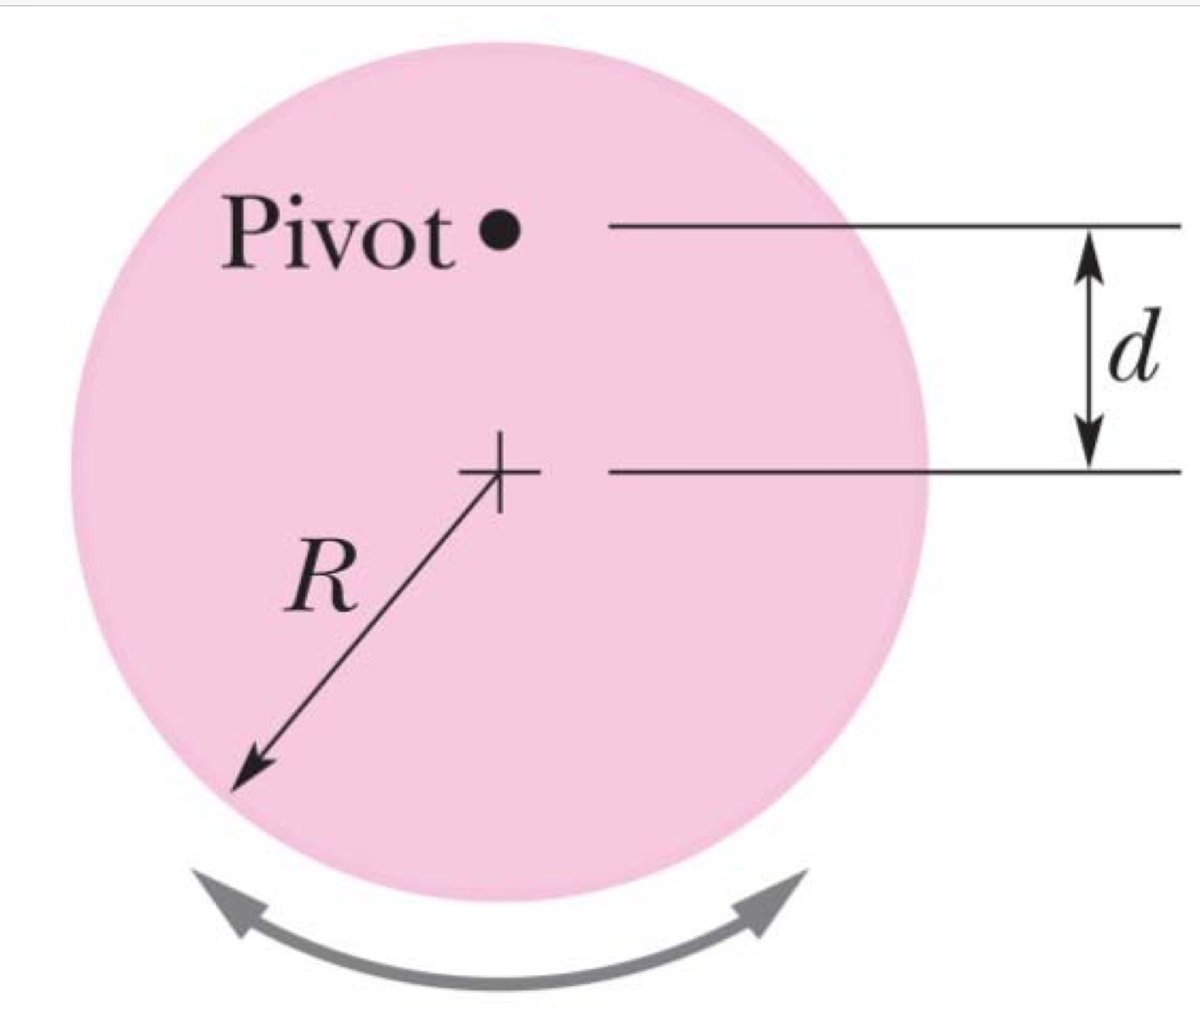 Pivot
R
